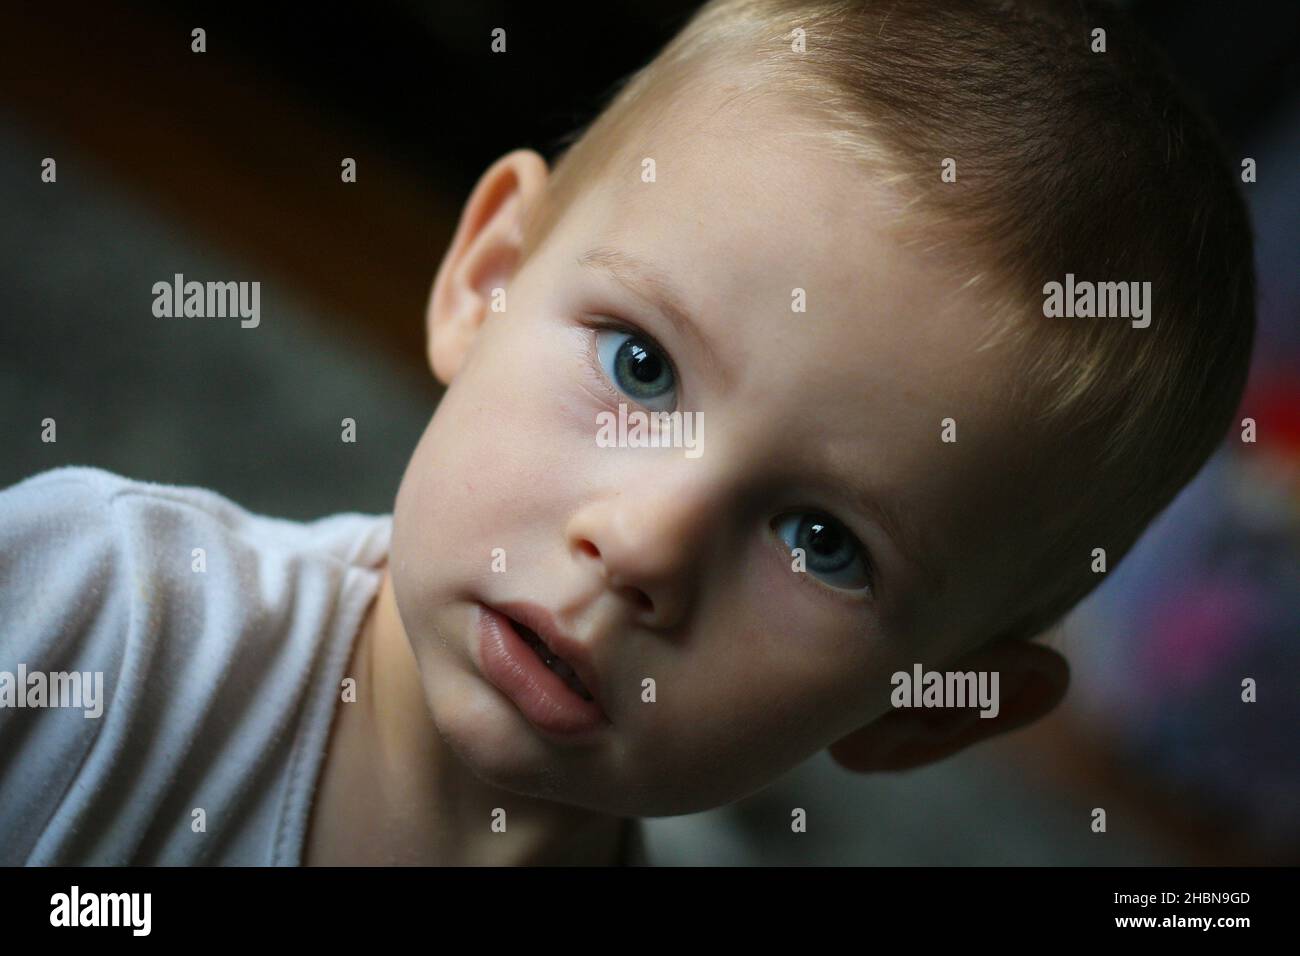 Spensierate il bambino di due anni guarda direttamente alla fotocamera Foto Stock